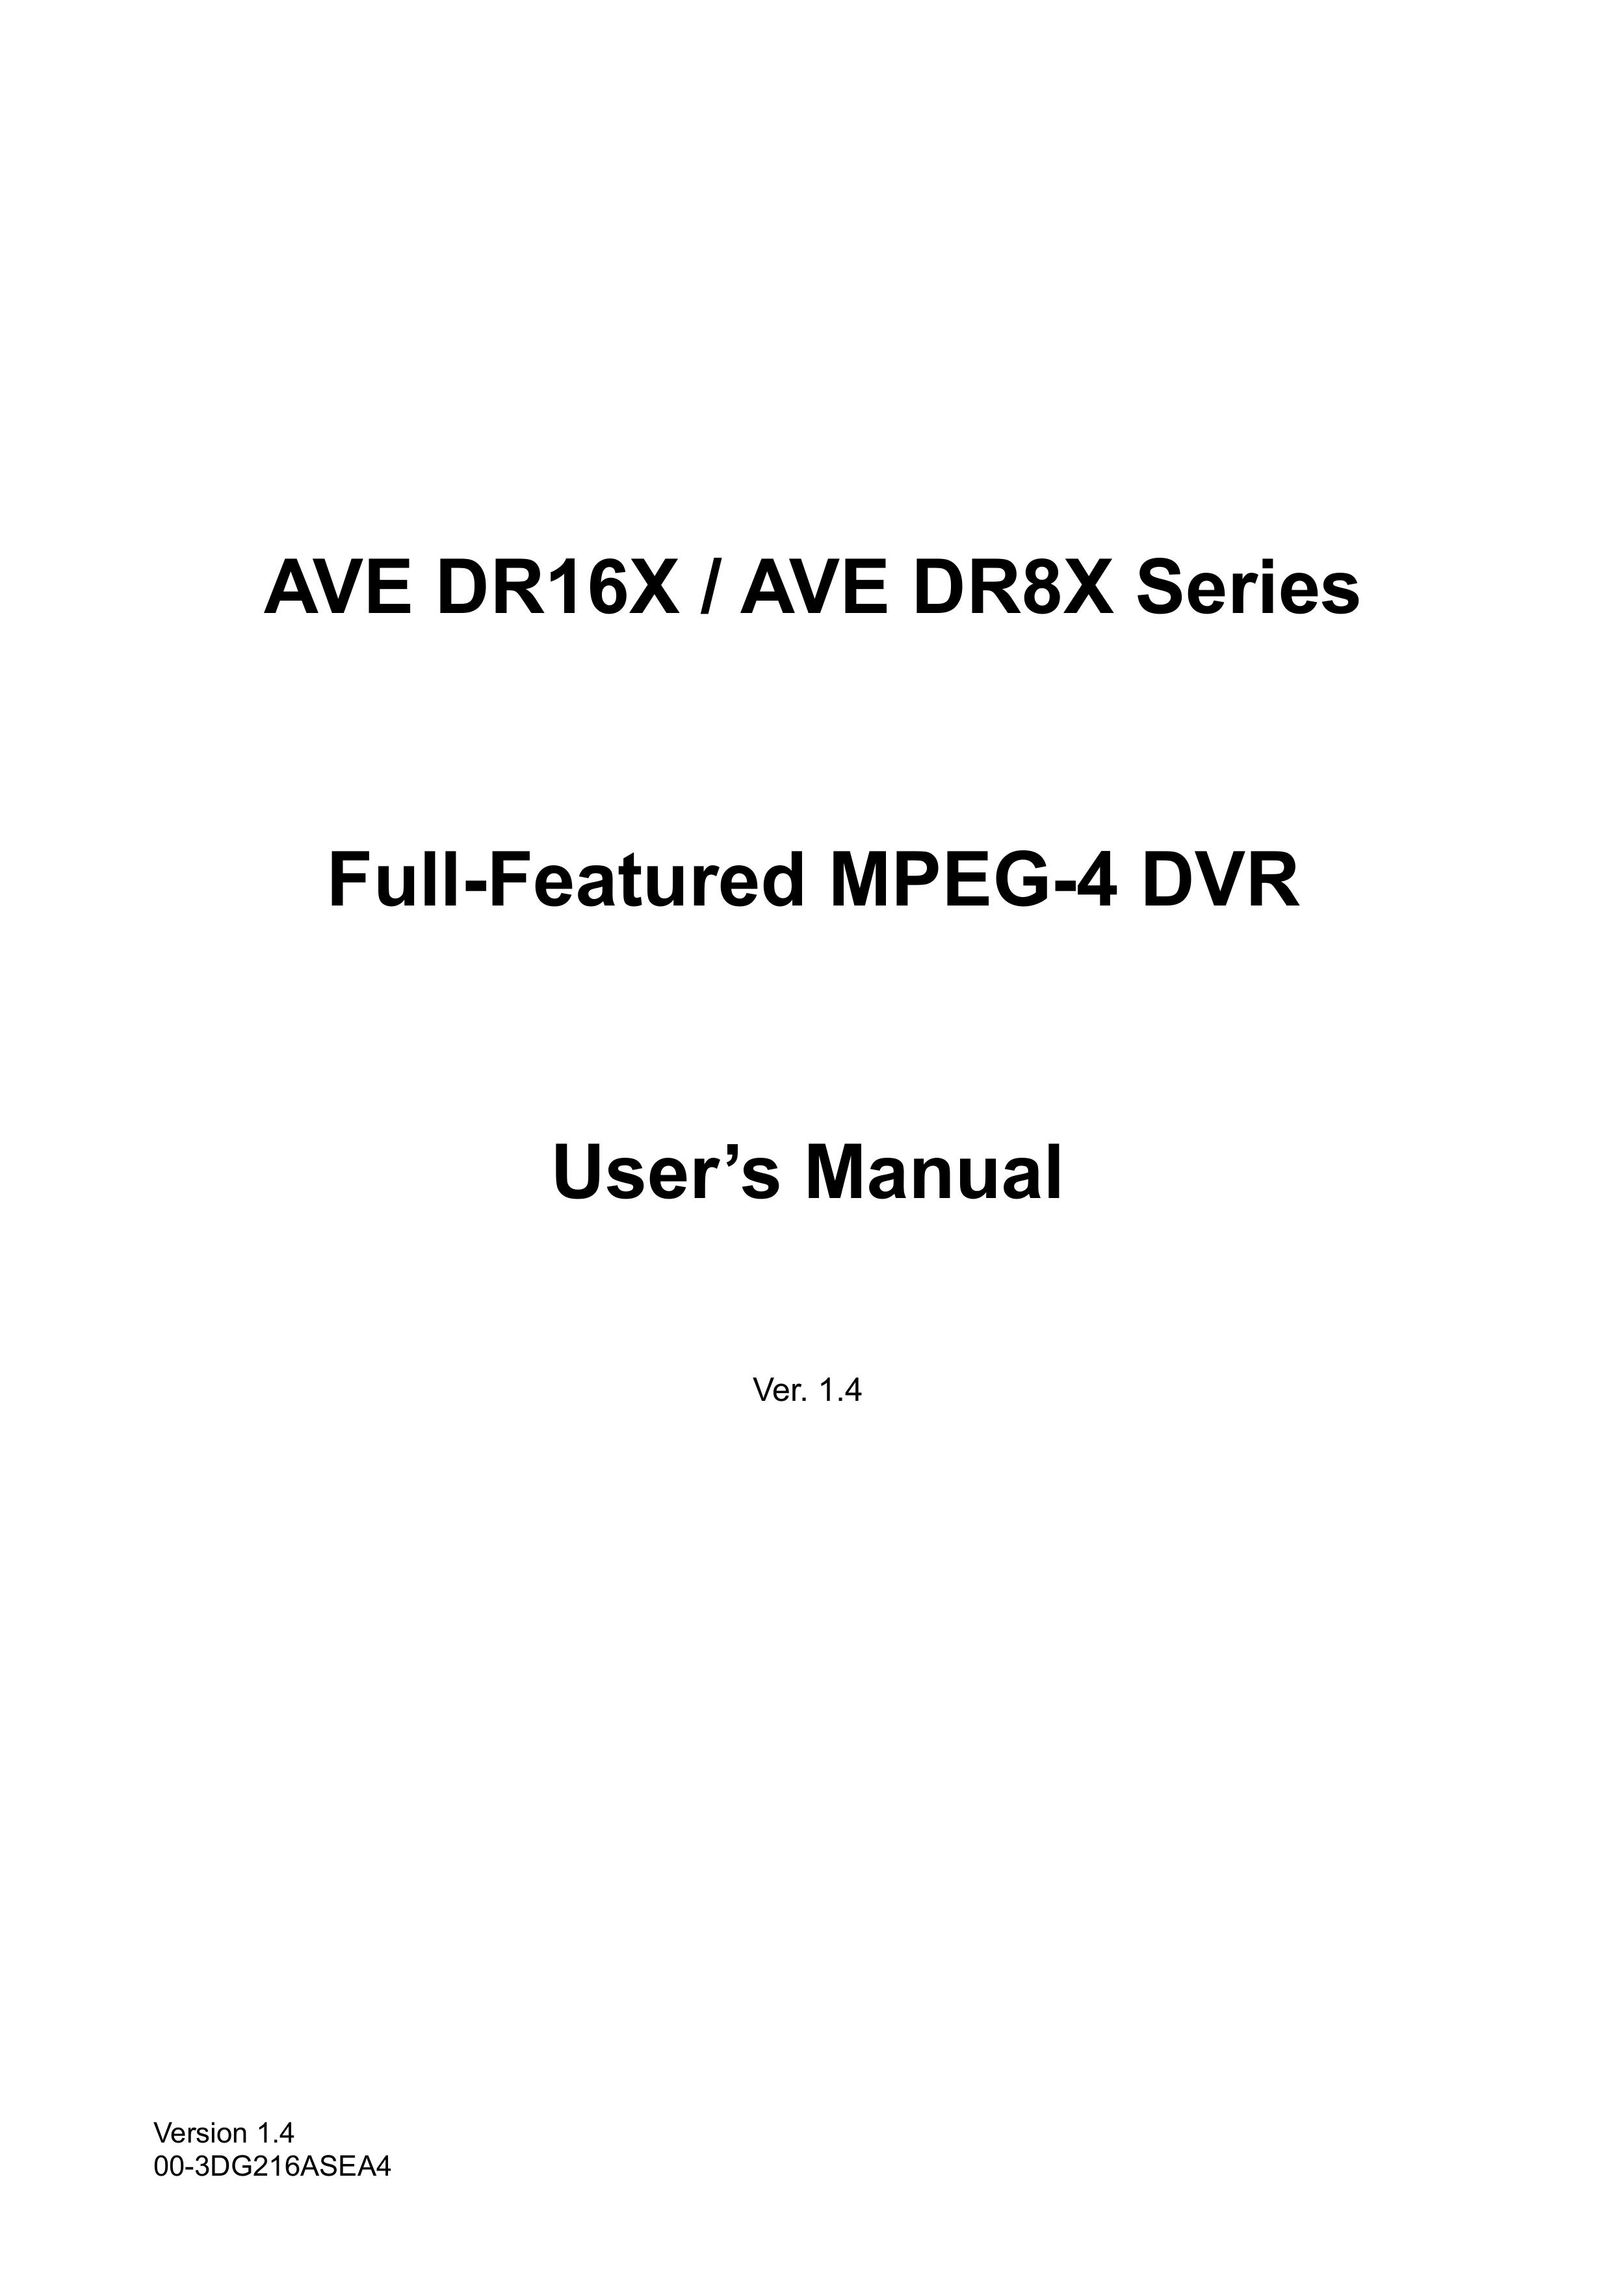 AVE MV DR8X DVR User Manual